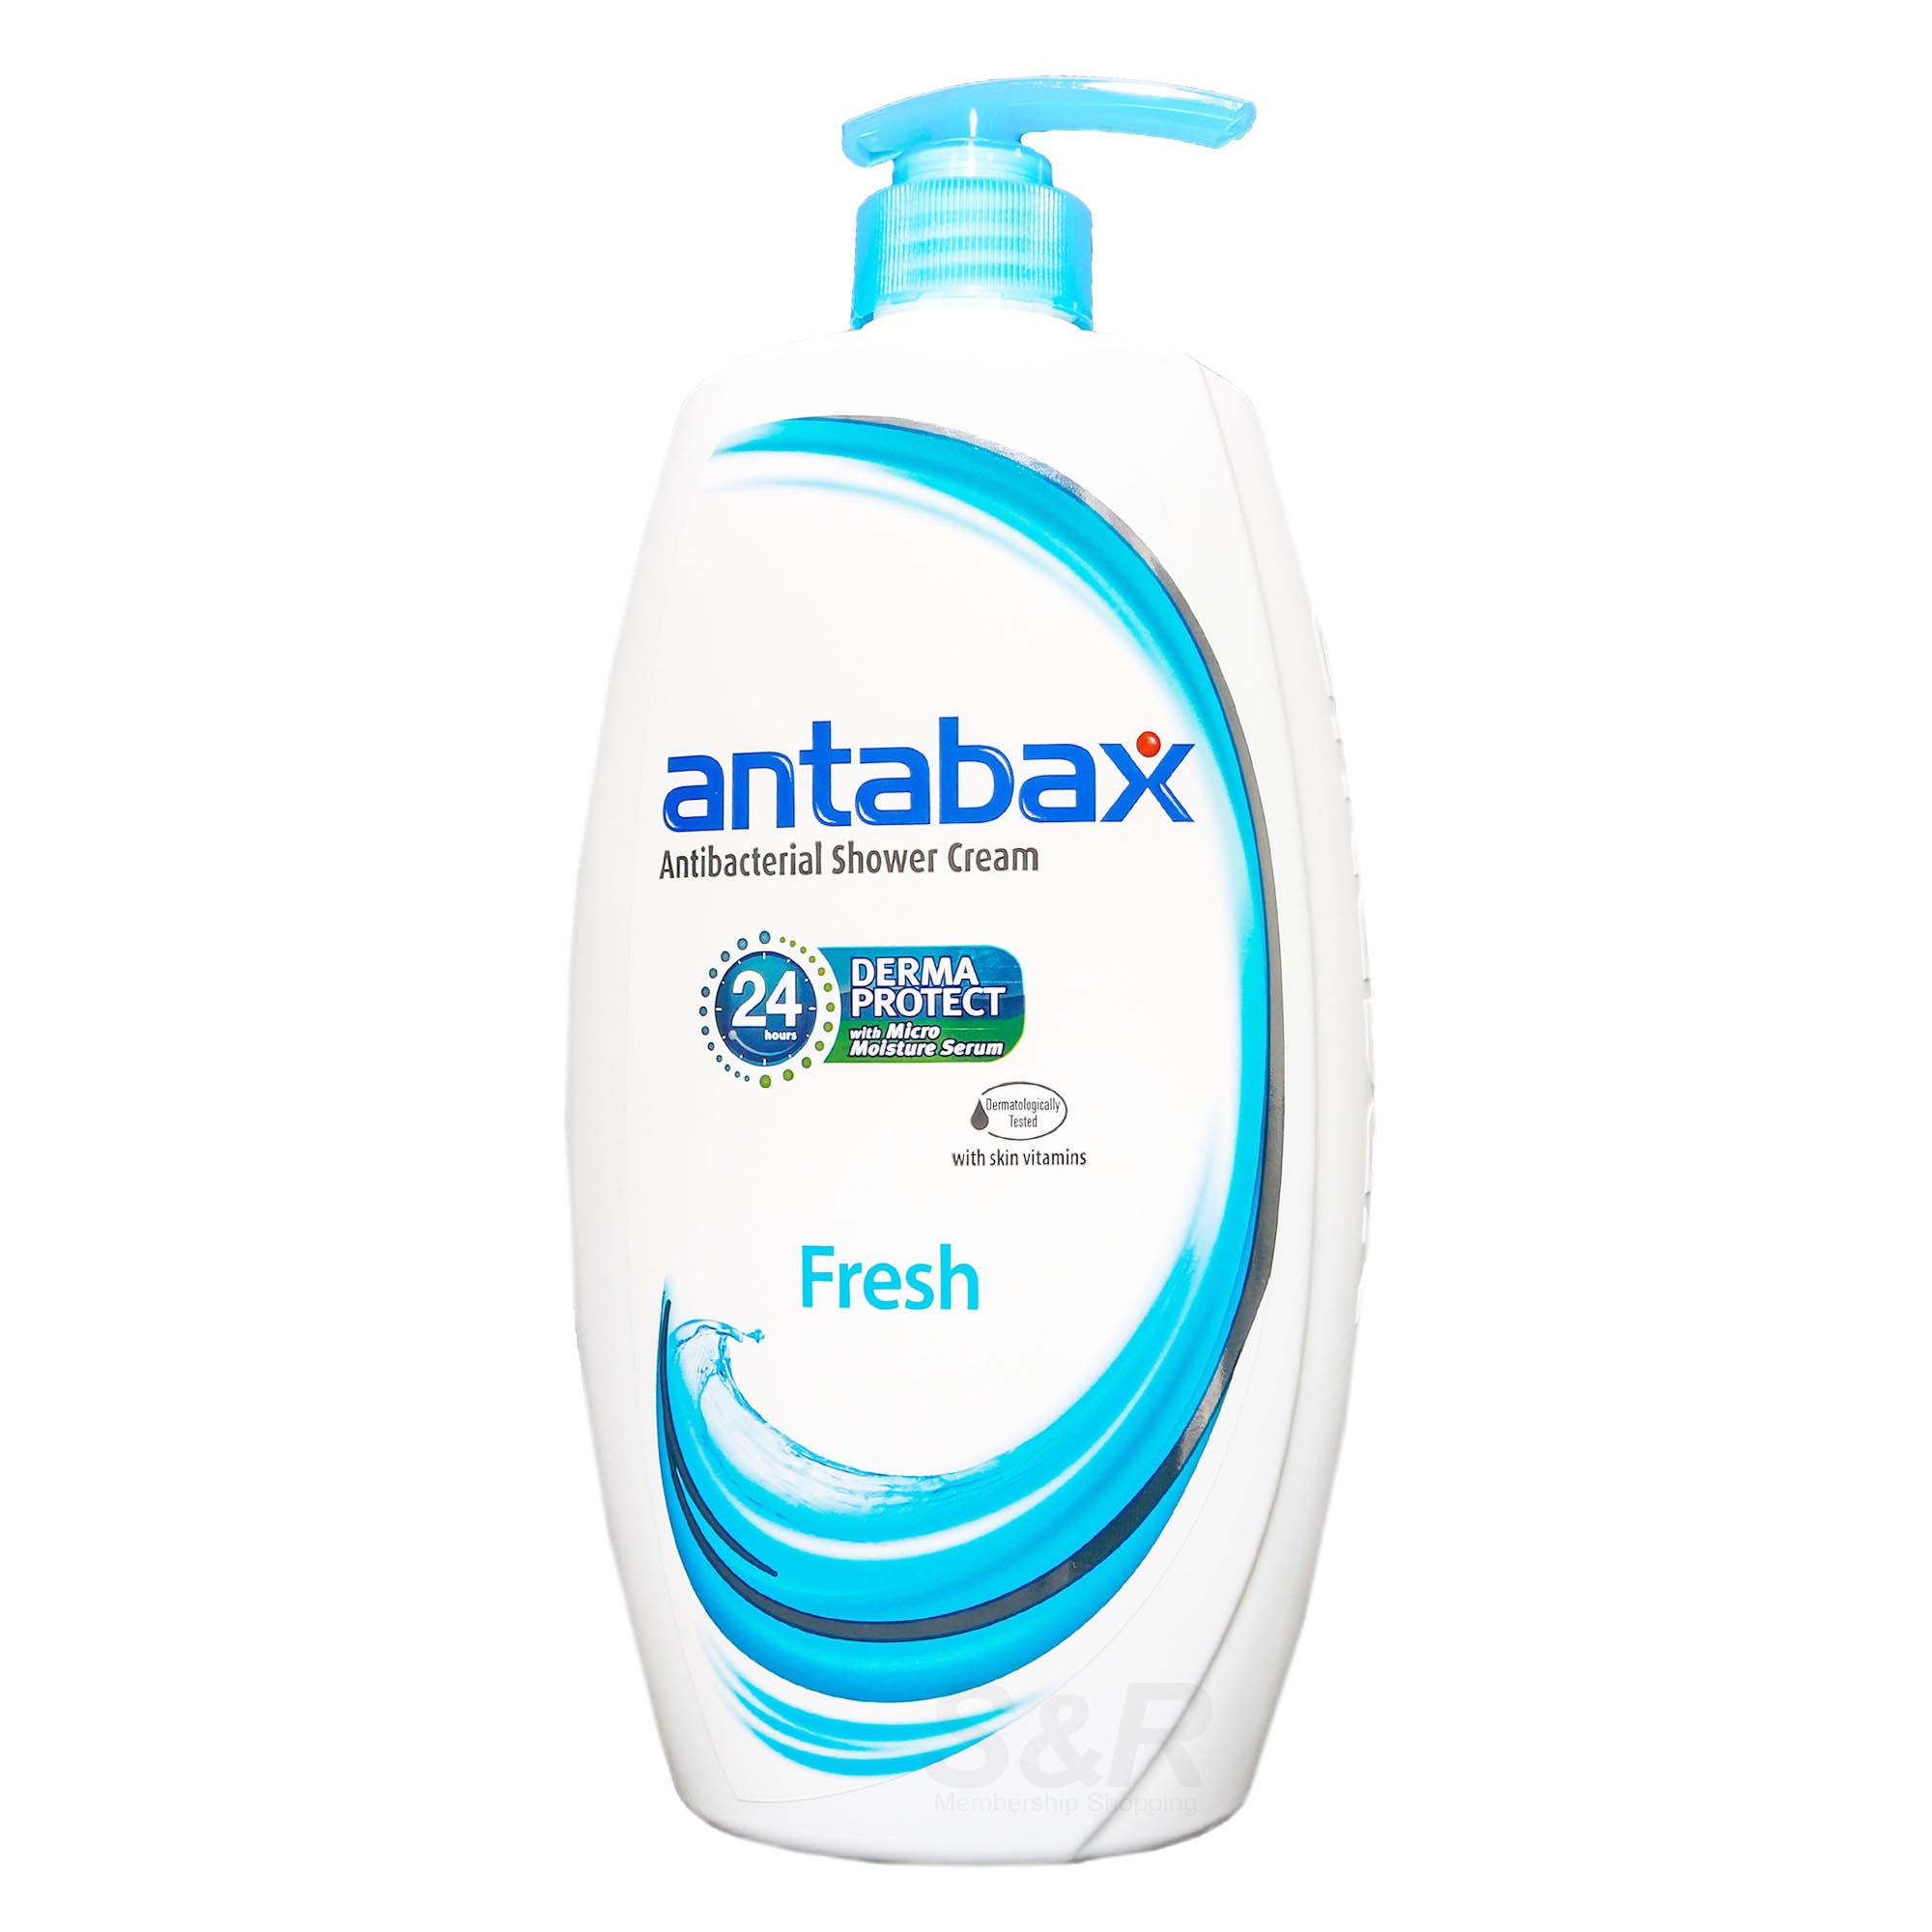 Antabax Fresh Antibacterial Shower Cream 975mL